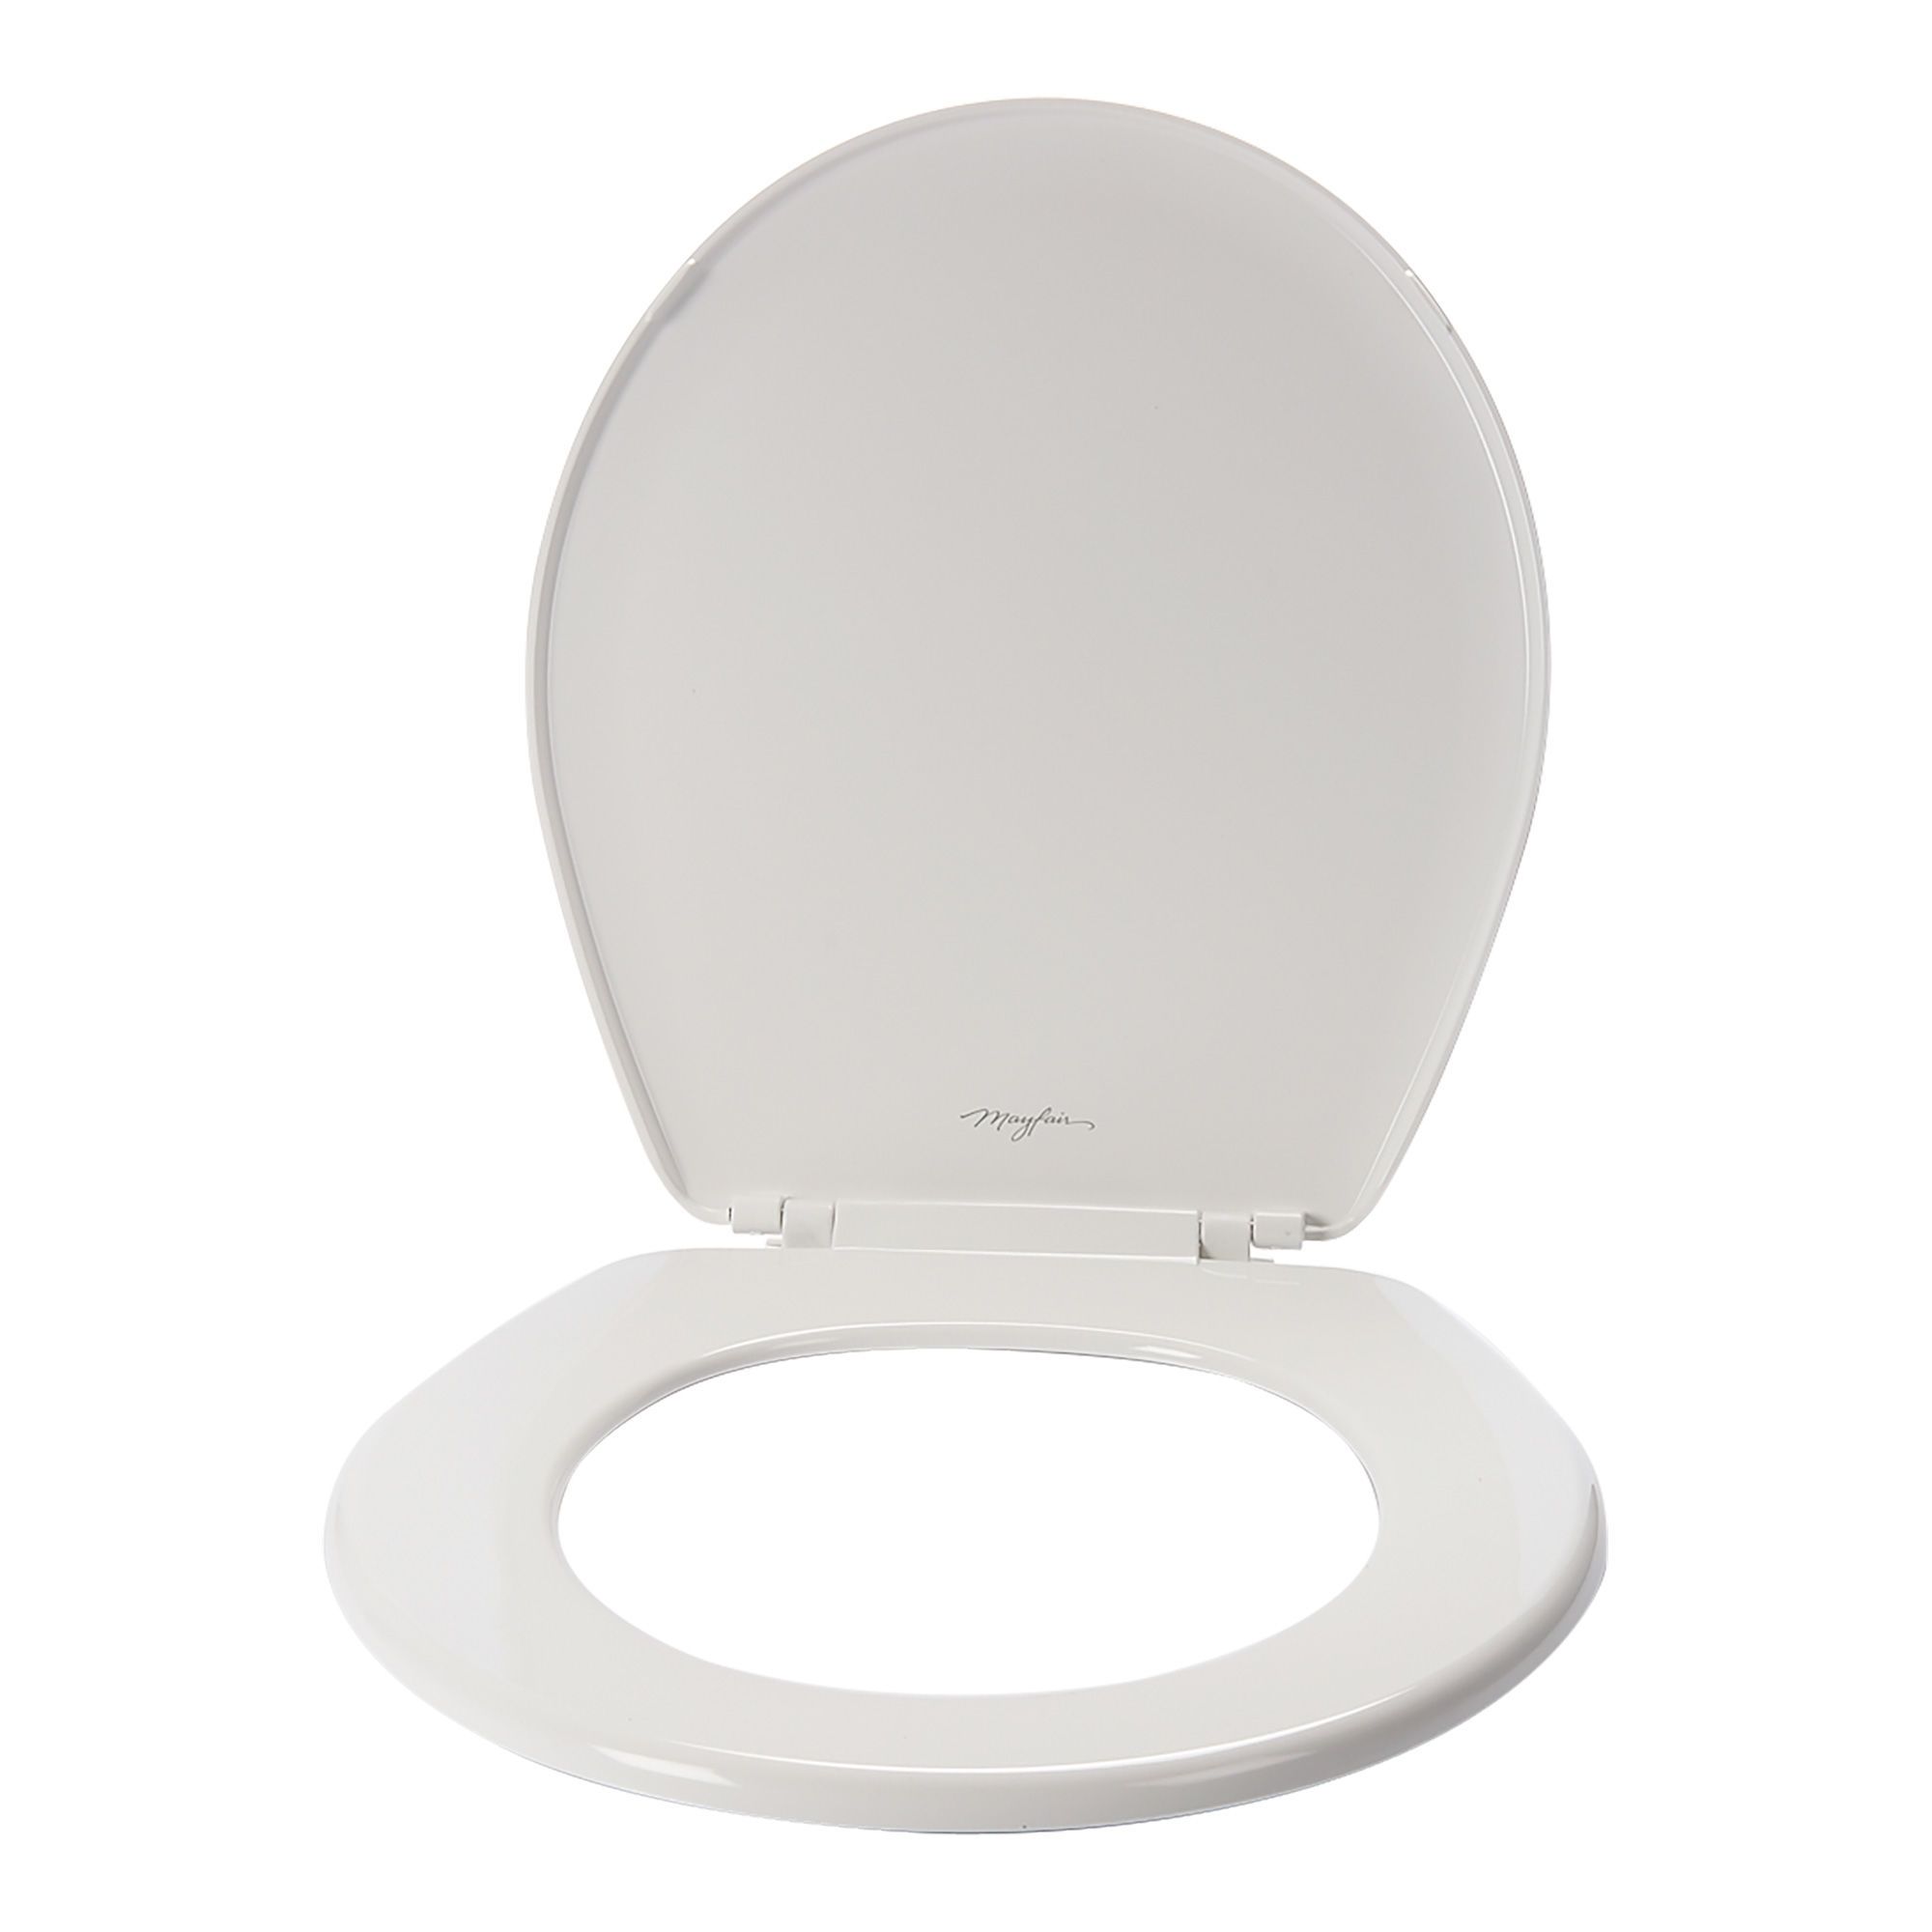 Siège de toilette rond en plastique Econo, blanc, 14.31 x 15.13